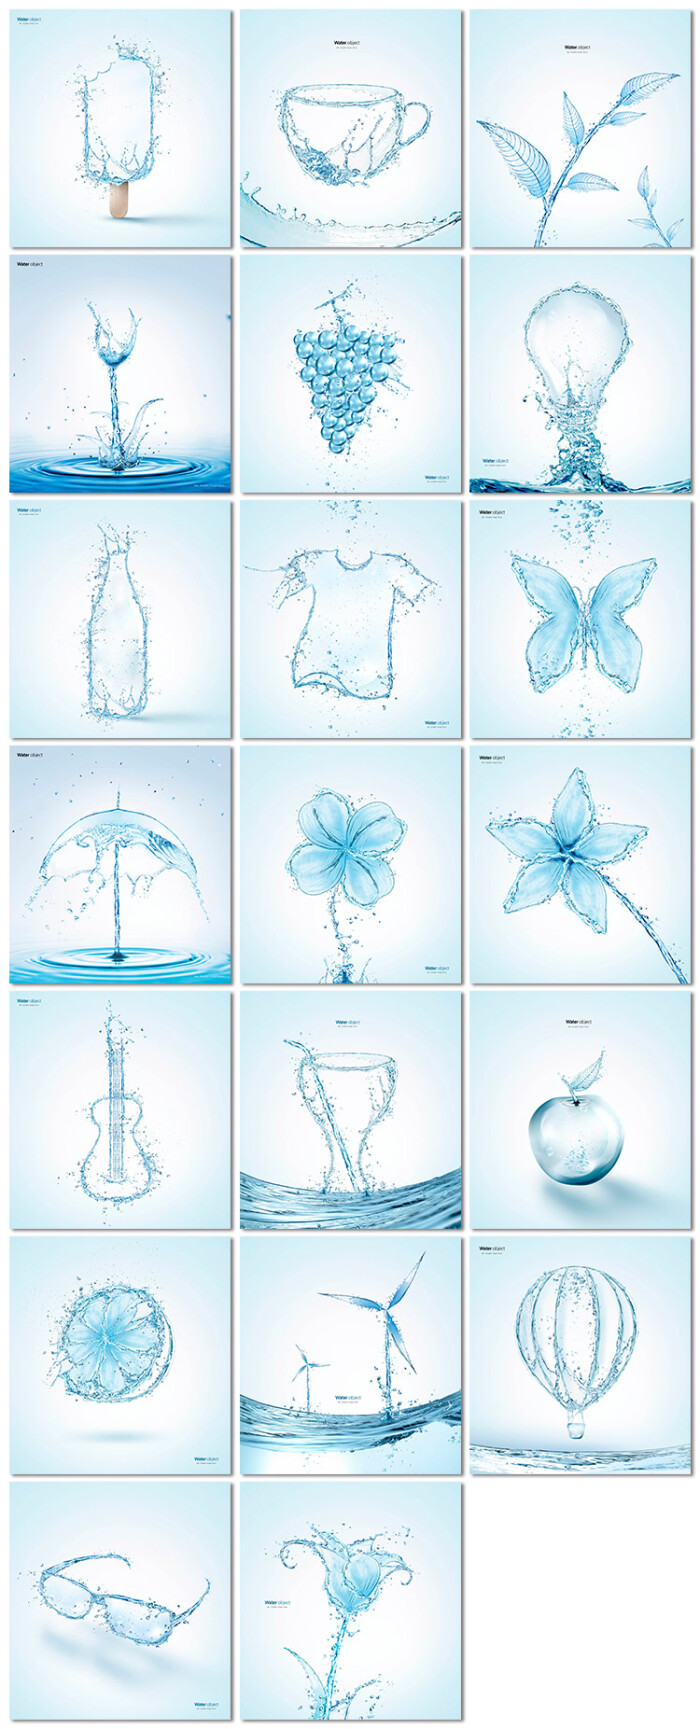 水元素创意水滴拟物构成透明泼溅矿泉水广告海报psd模板素材设计